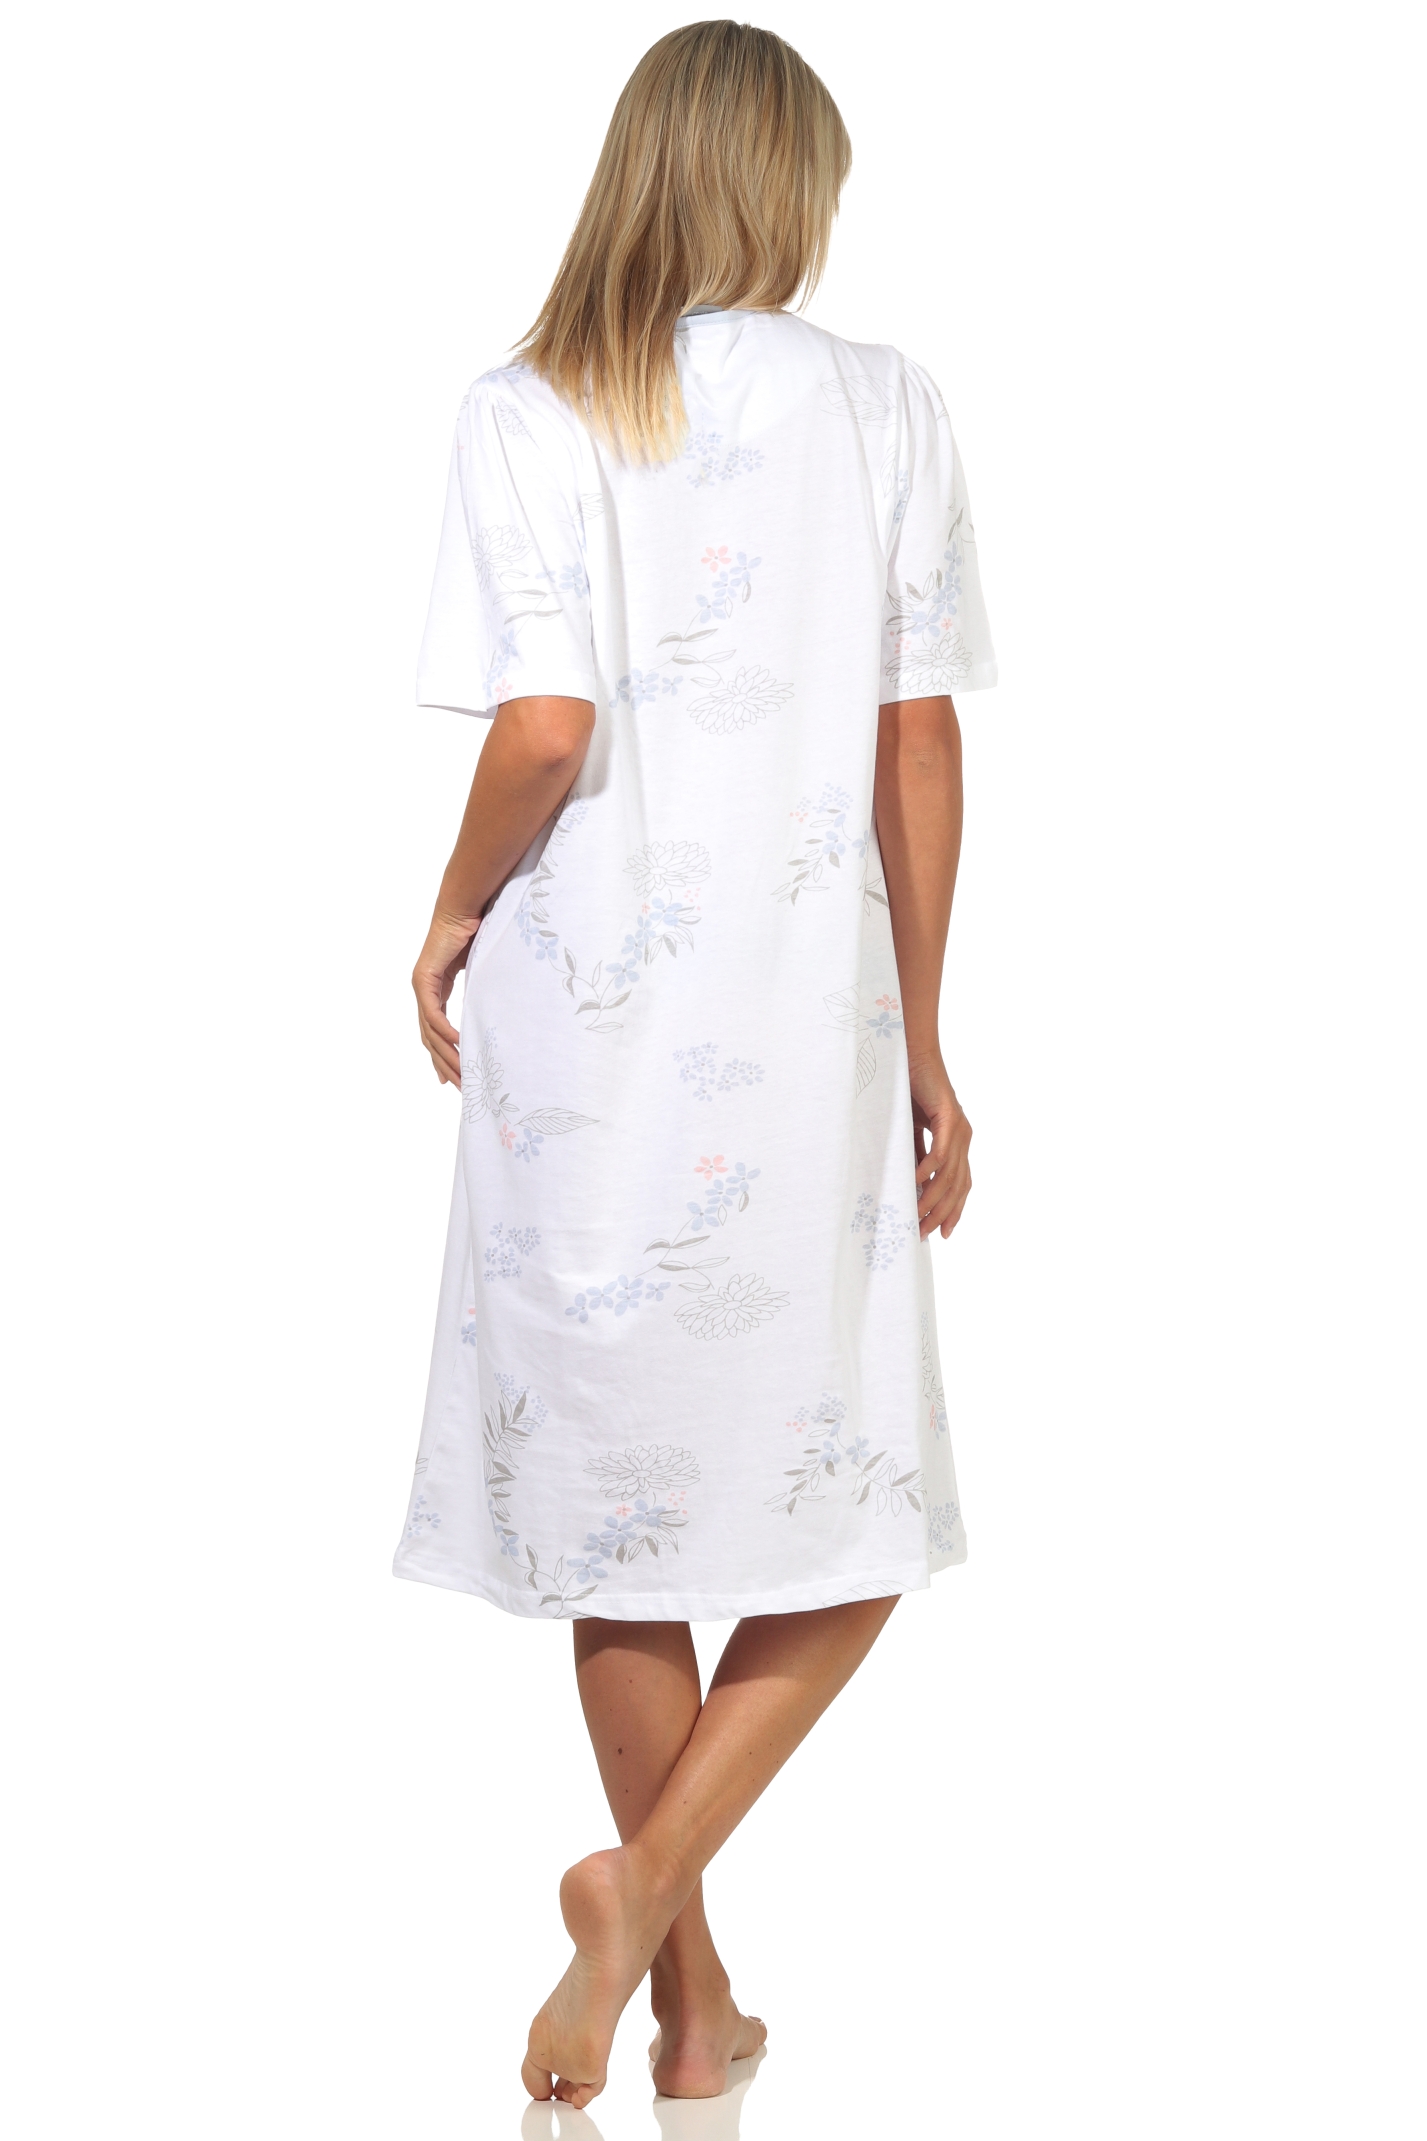 Damen Nachthemd kurzarm klassische Design mit Knopfleiste am Hals – 112 210 90 310